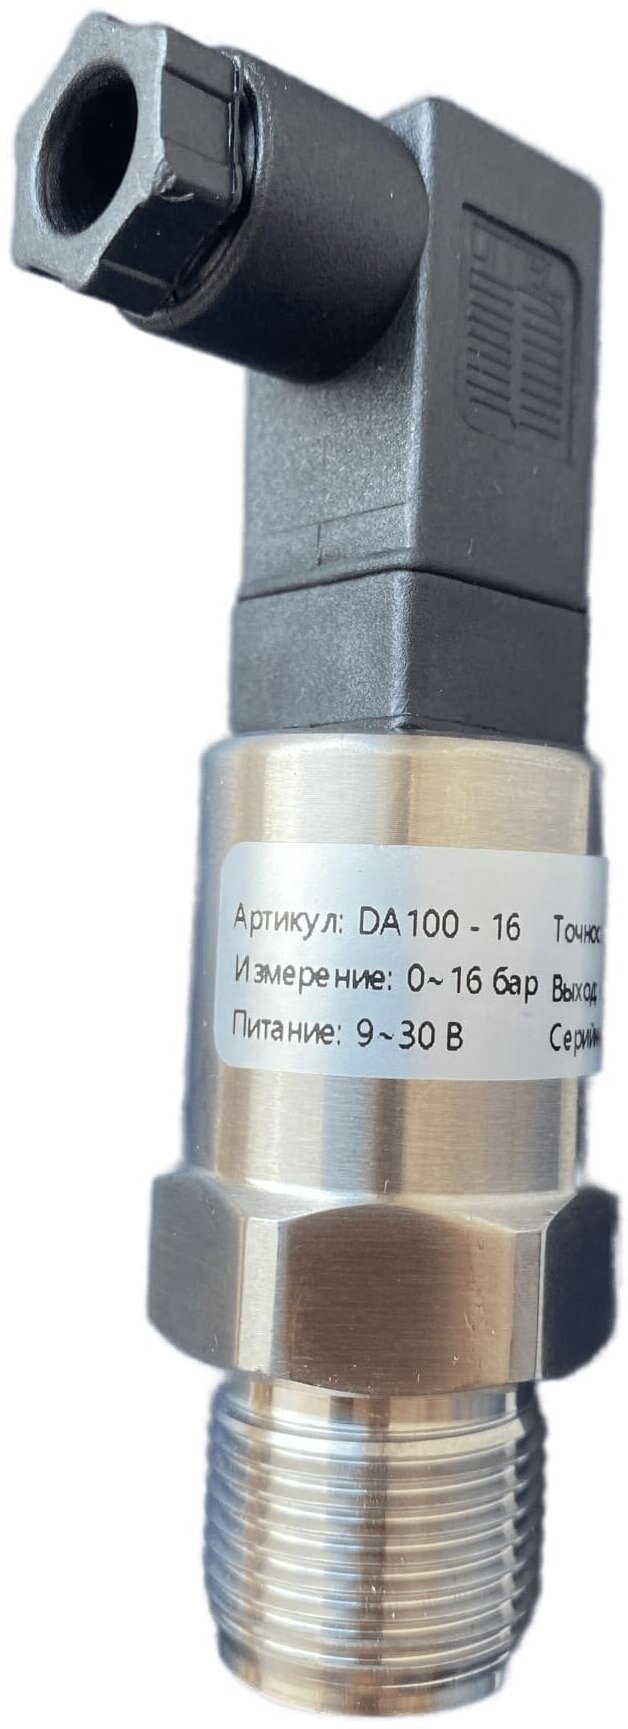 DA100-16 Датчик давления 24В с выходом 4-20мА резьба М20х1.5 давление 0-16 бар